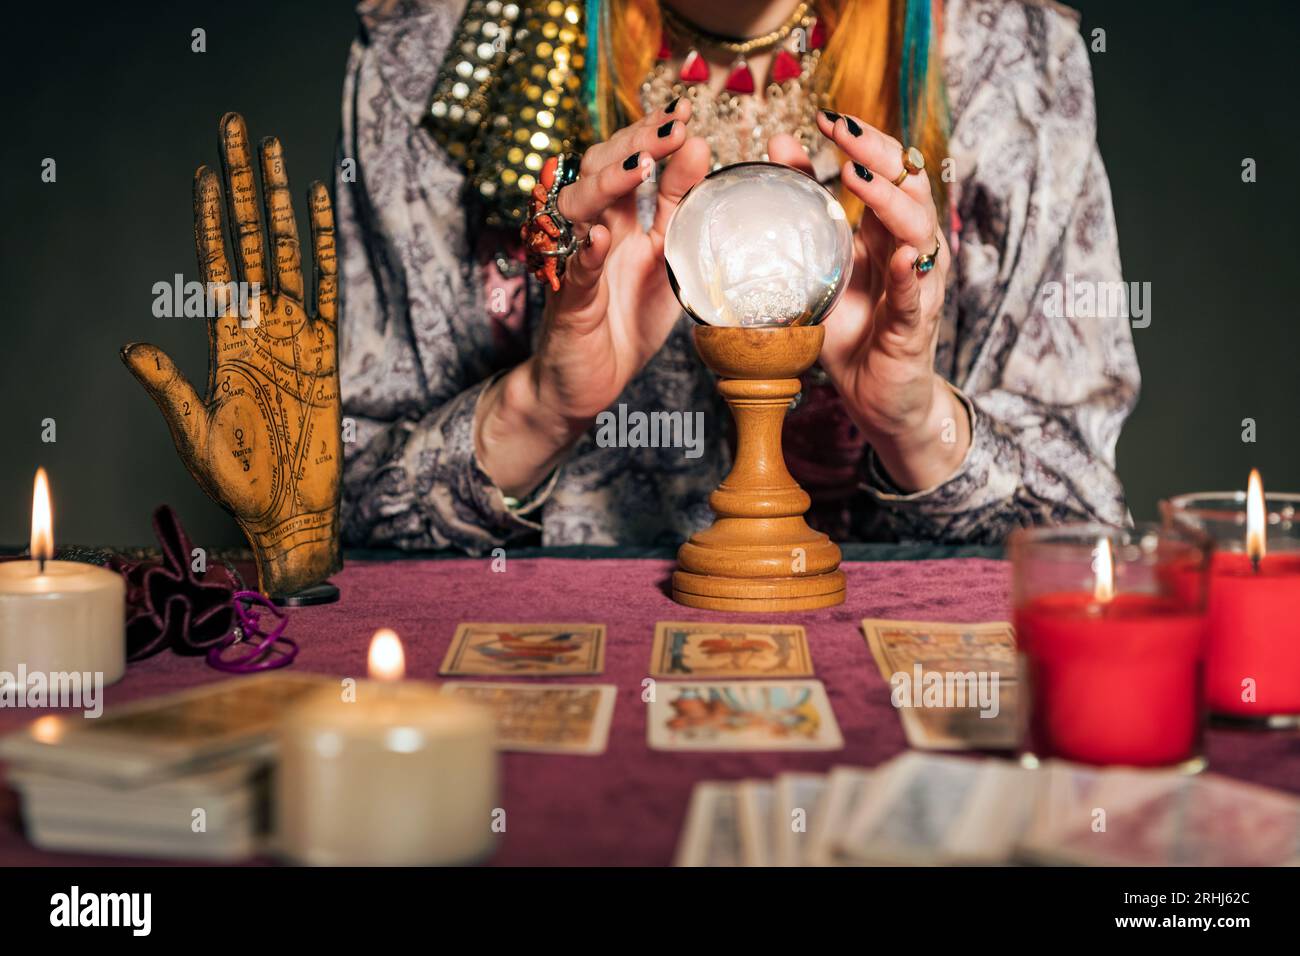 Recadrez-vous de fortune dans des vêtements authentiques assis à table avec des bougies allumées et des cartes de tarot tout en devinant l'avenir avec boule magique Banque D'Images